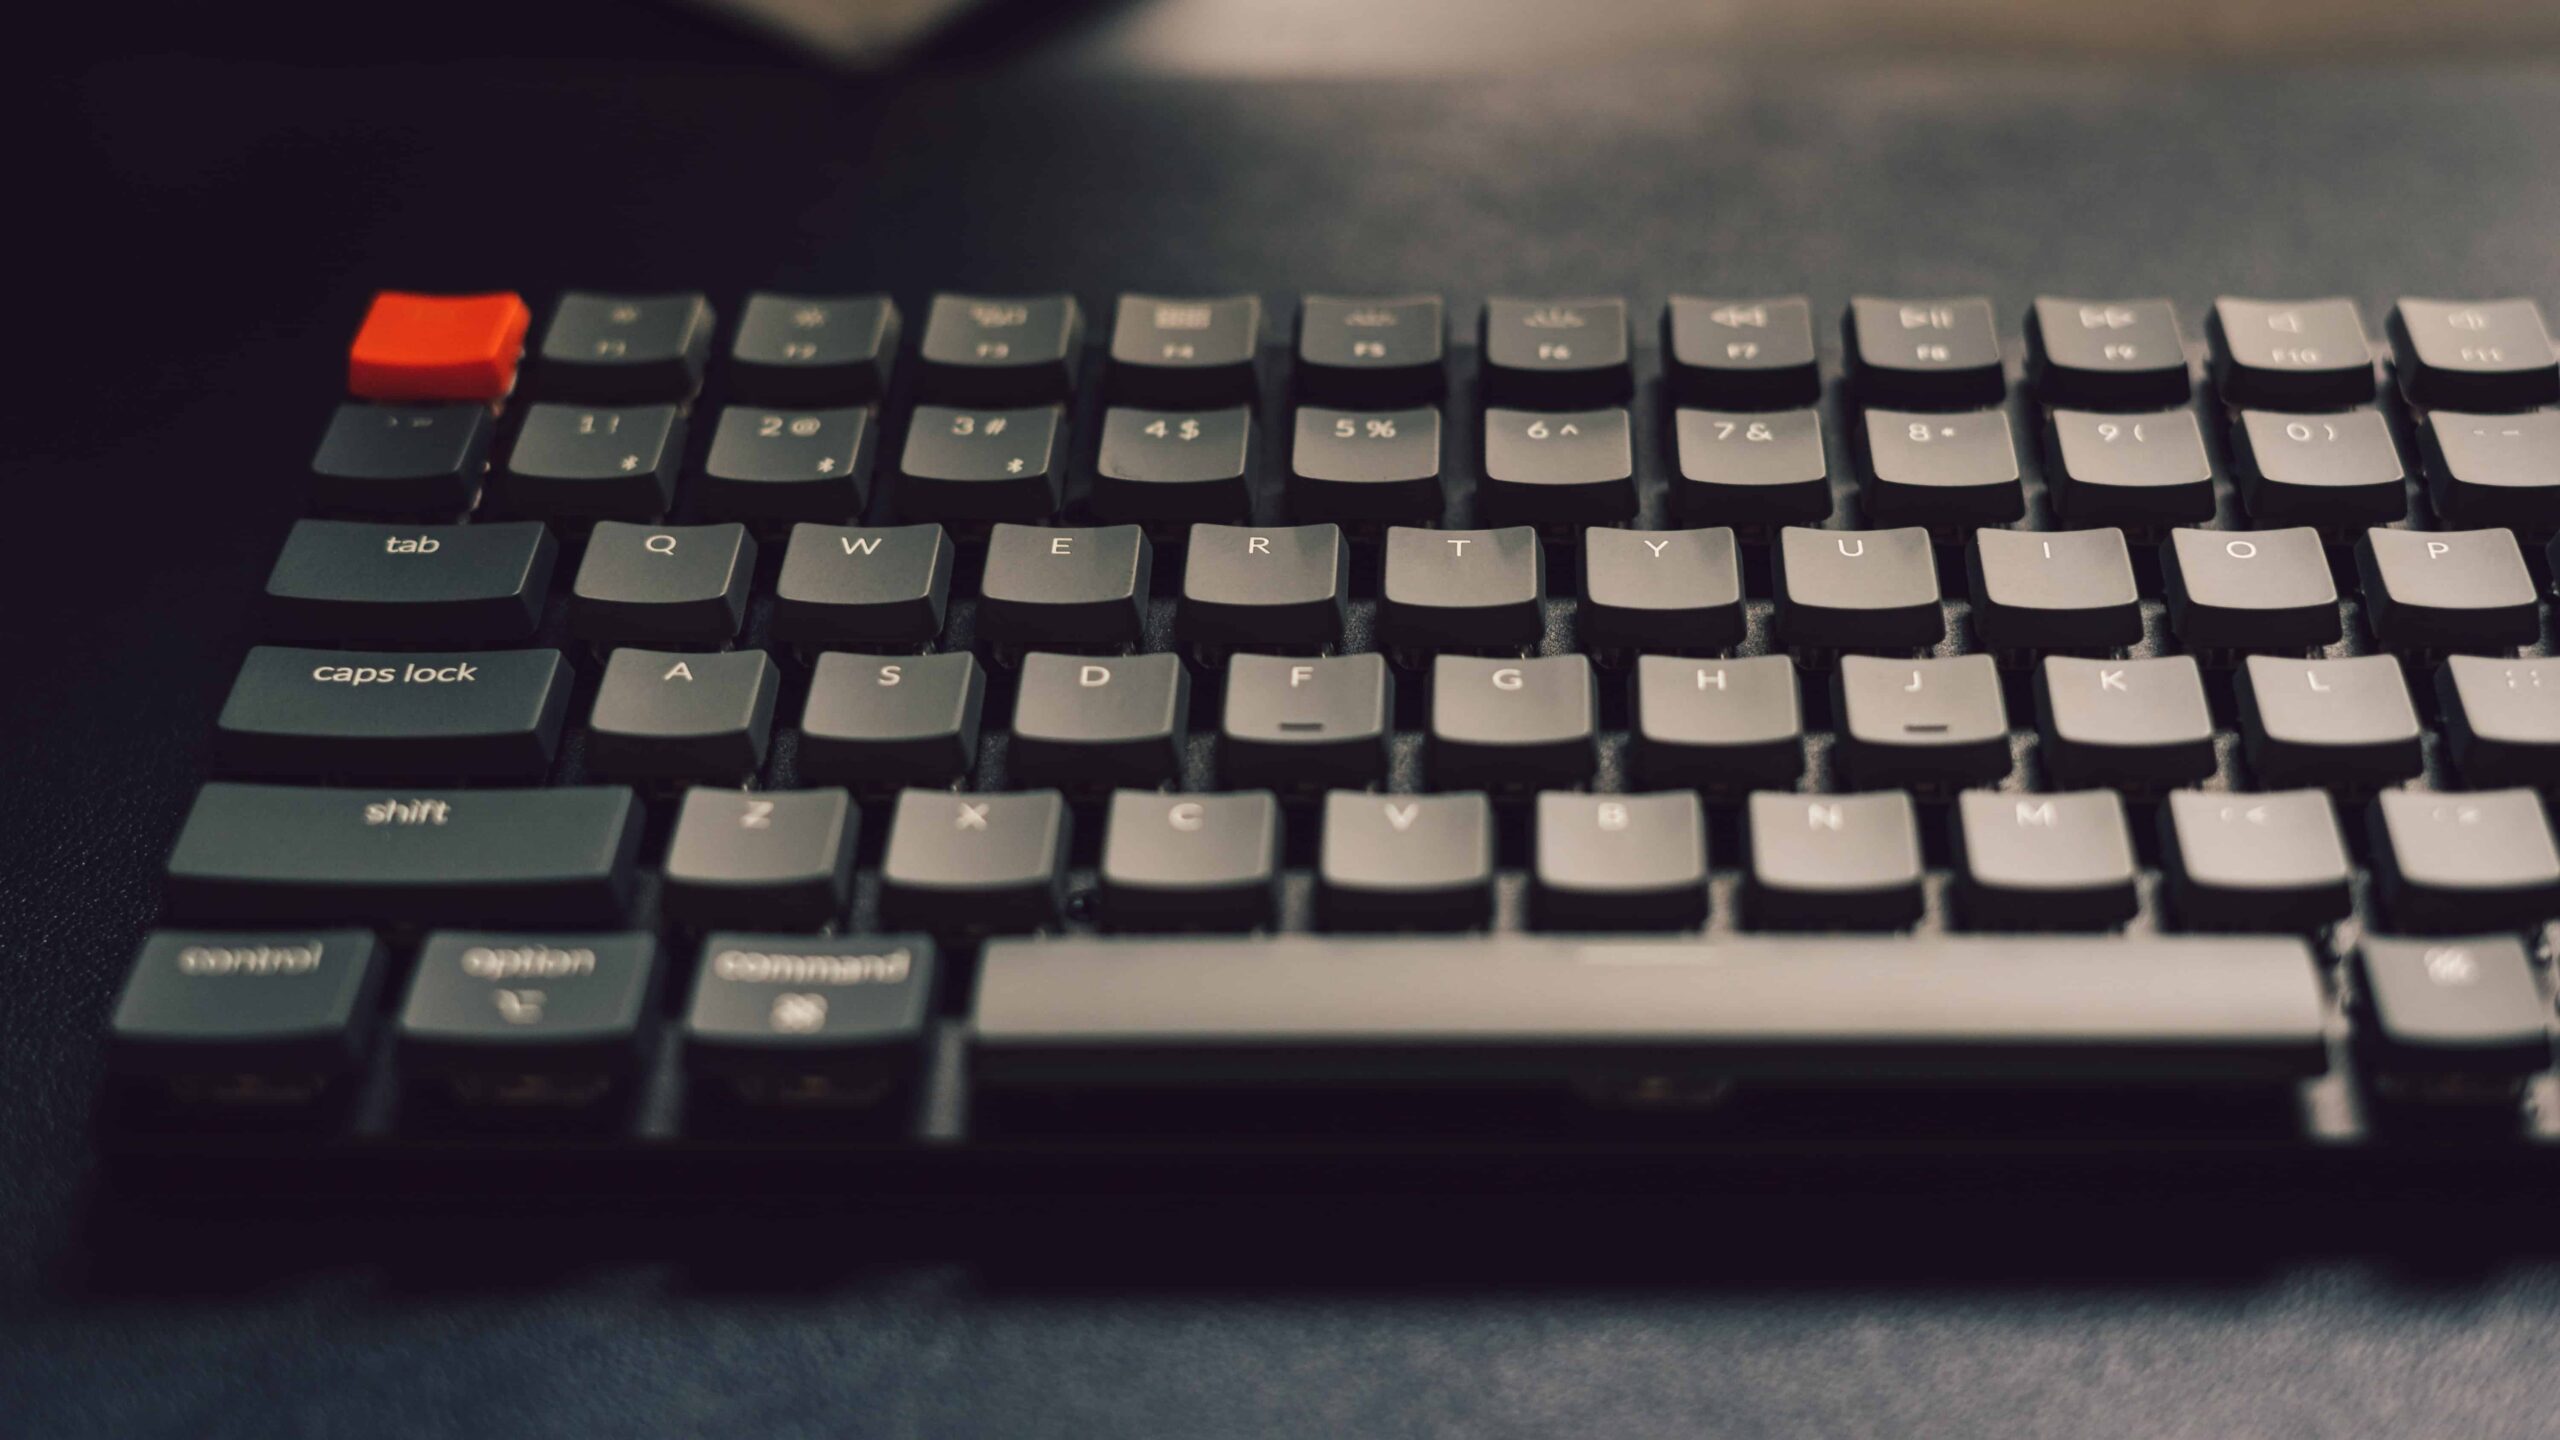 Why Get A Mechanical Keyboard?